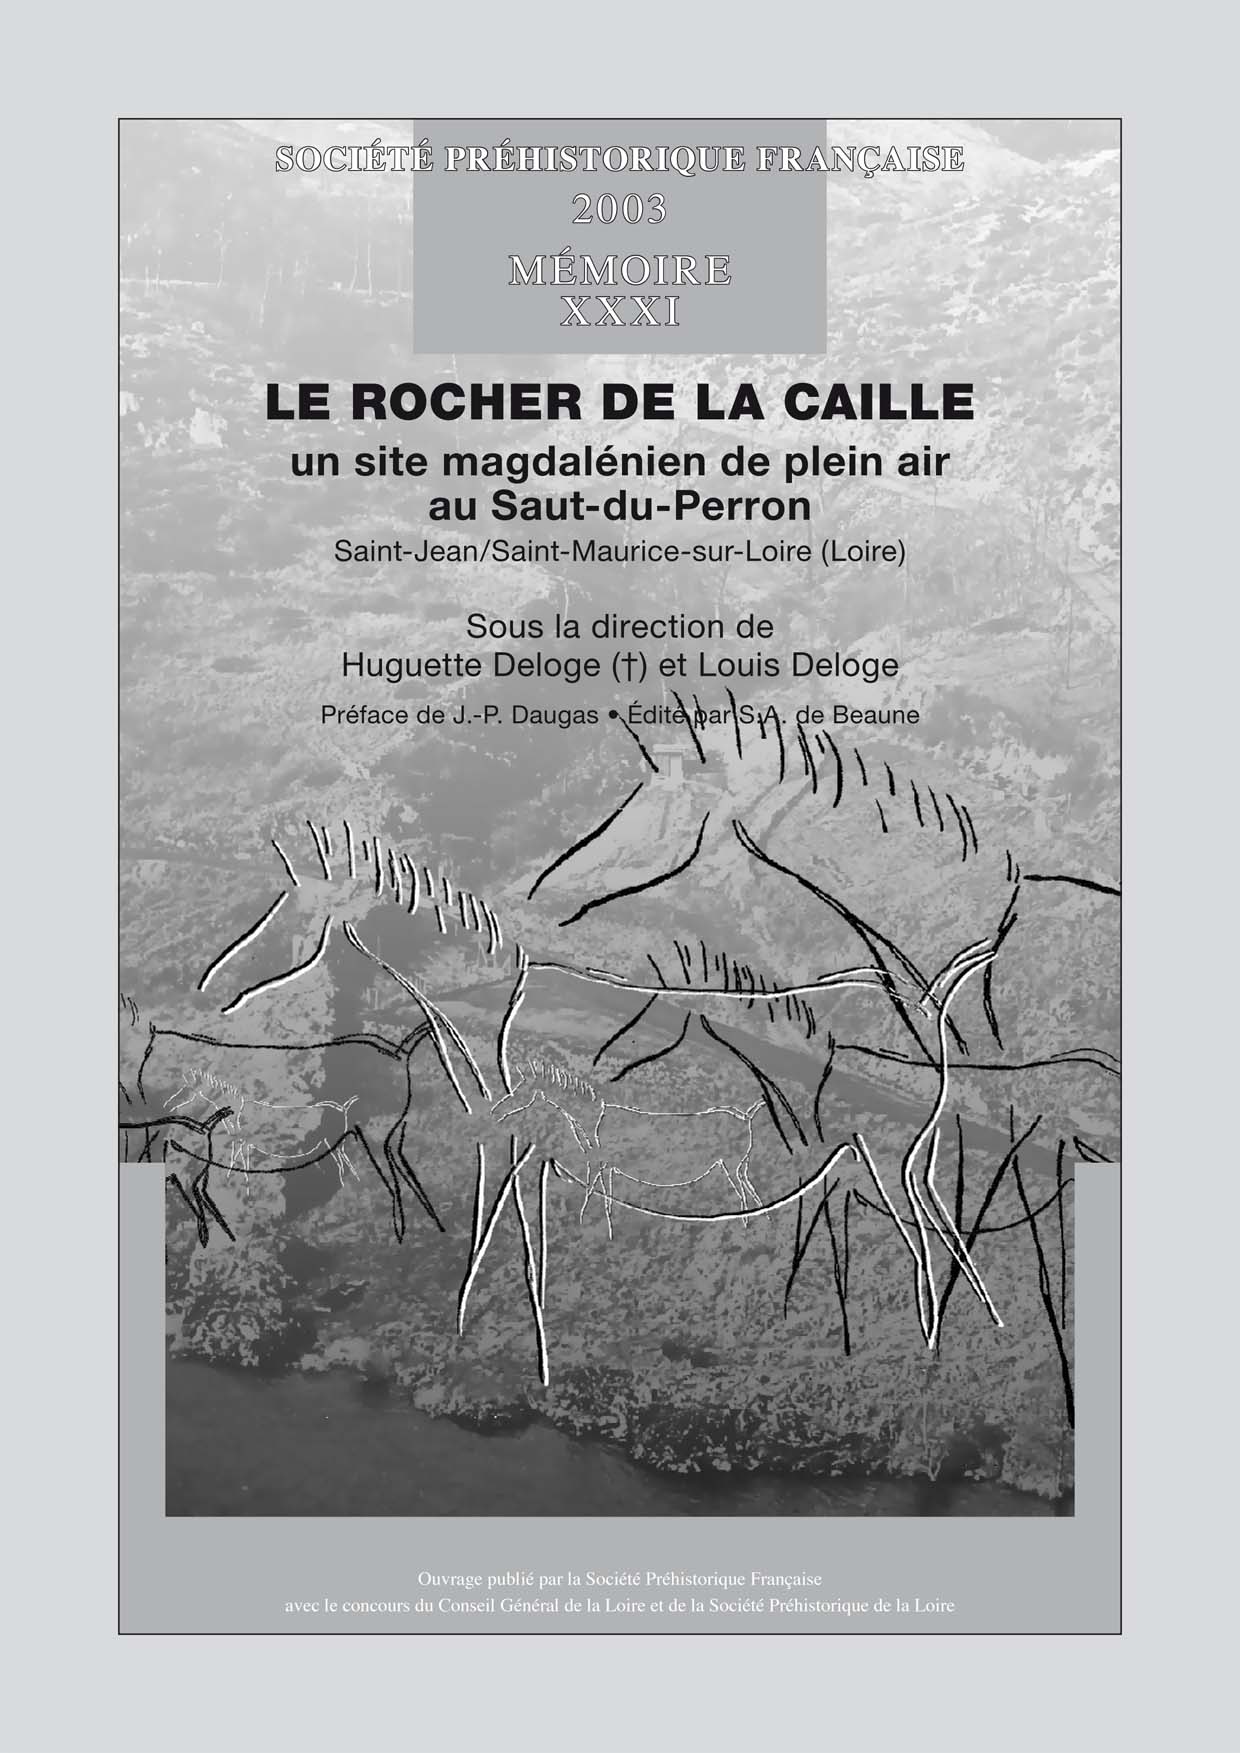 Le Rocher de la Caille, un site magdalénien de plein air au Saut-du-Perron, Saint-Jean/Saint-Maurice-sur-Loire, (Mémoire SPF 31), 2003, 252 p., ill., br.